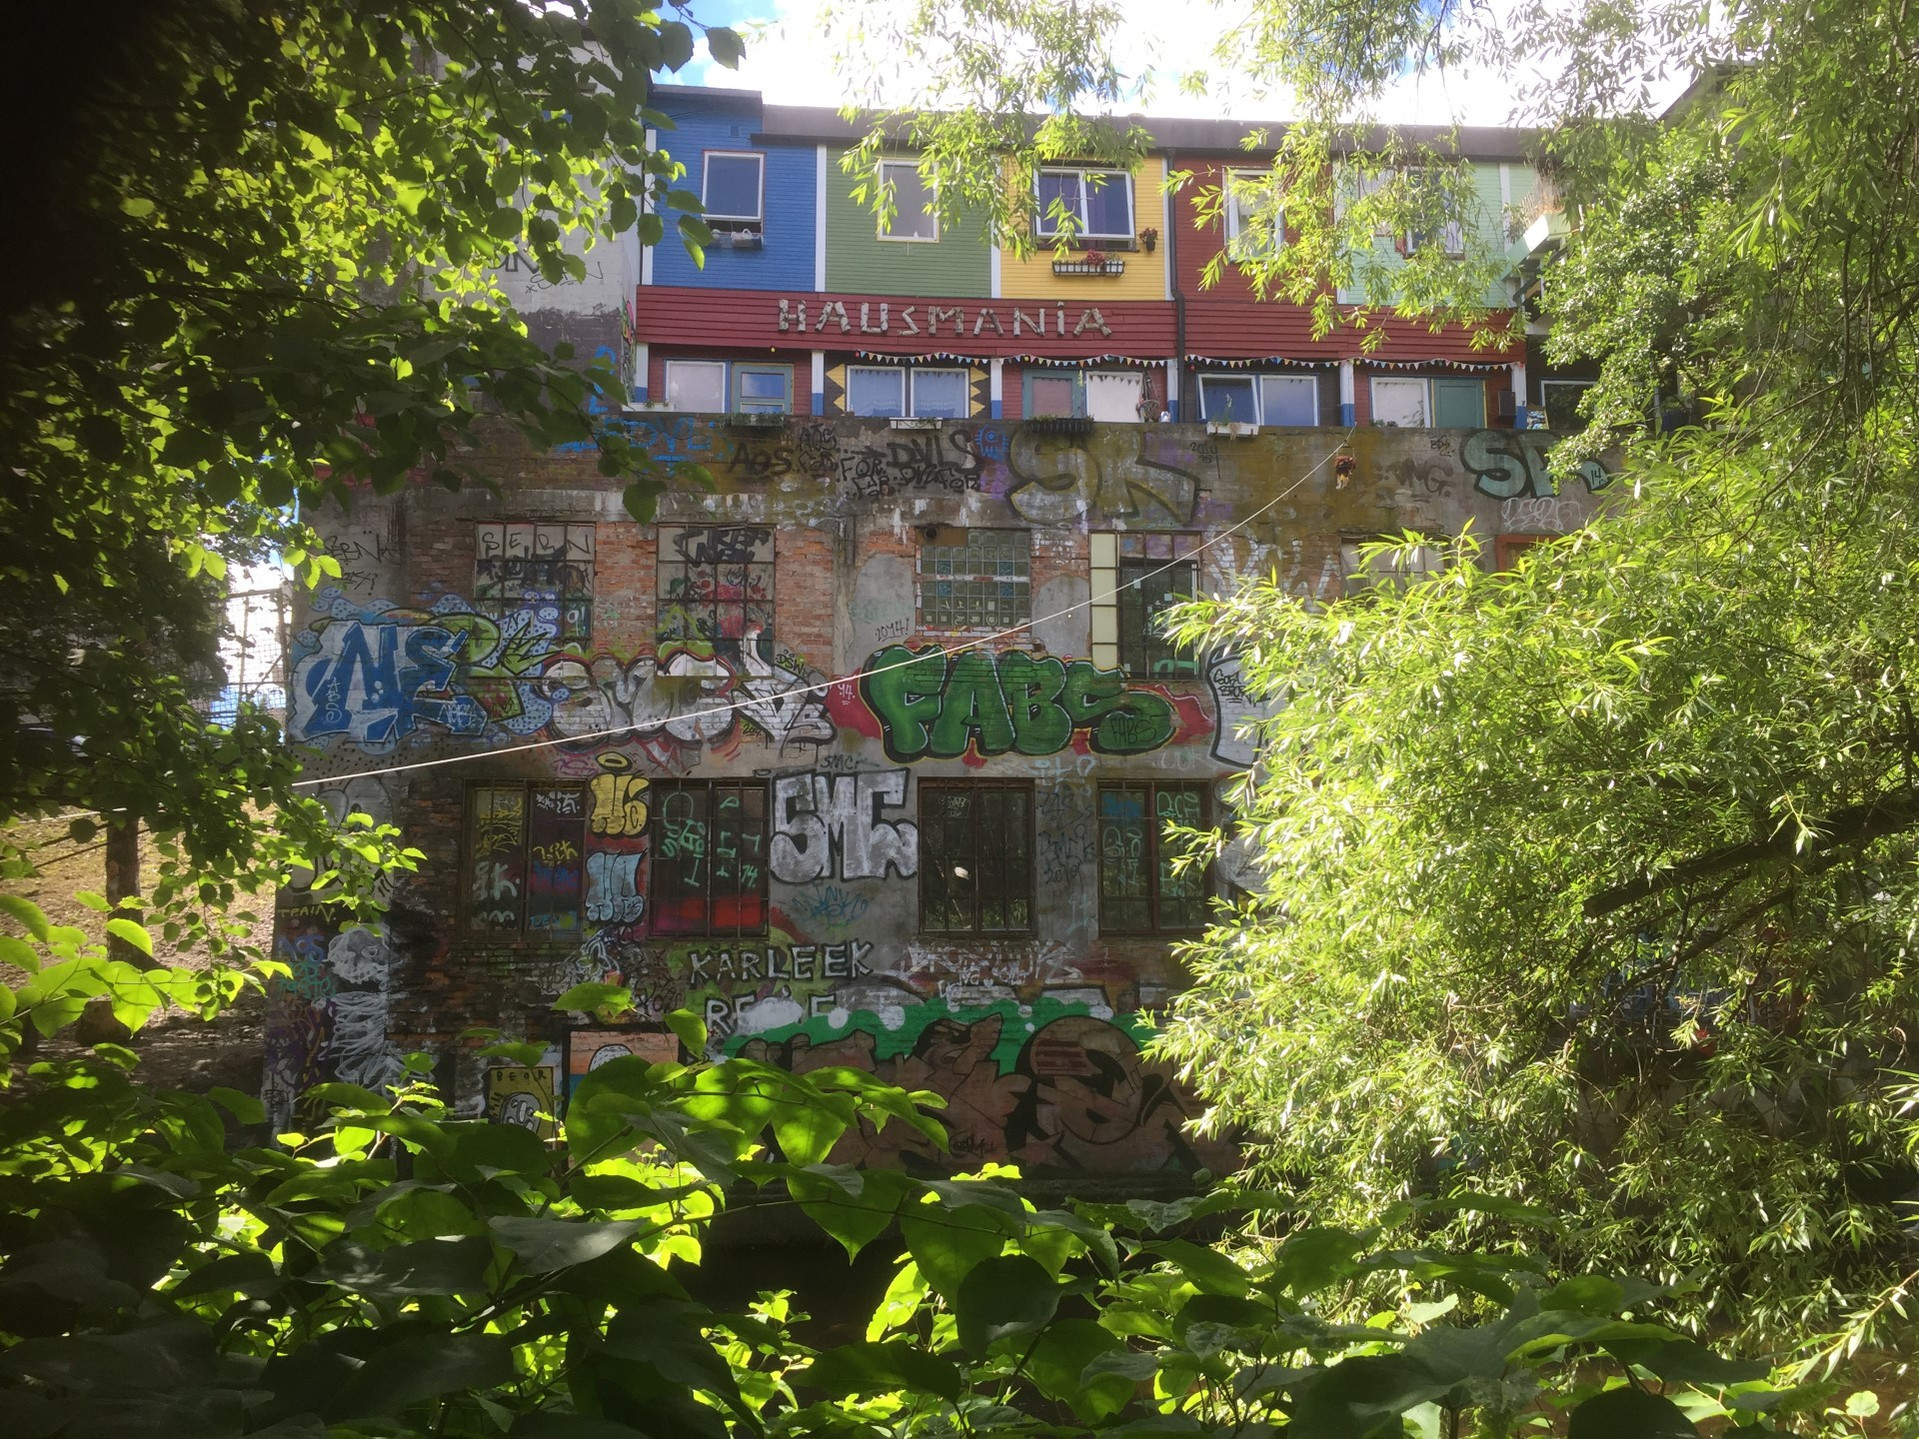 Fargefoto av baksiden av Hausmania kulturhus med en vegg fylt med graffiti. Sett gjennom grønne tregrener.